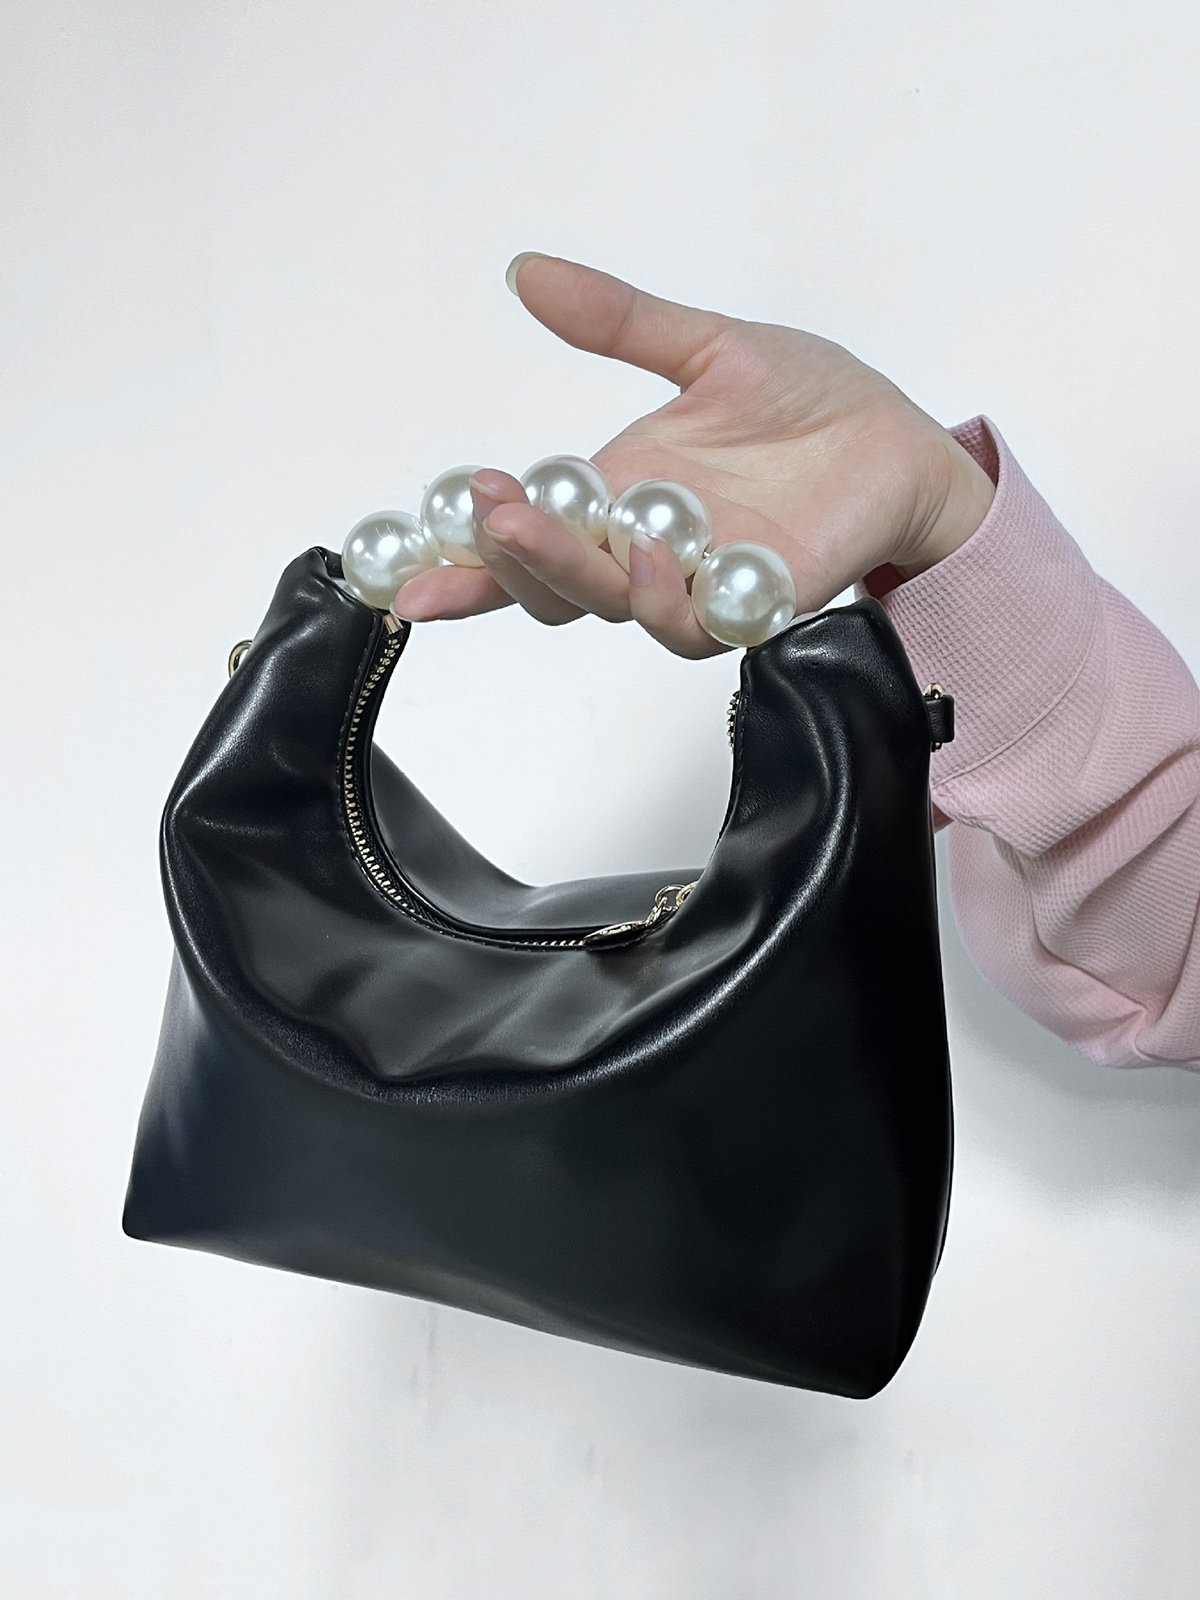 Elegant Nachgemachte Perle Handtasche Dünn Kette Gurt Umhängetasche